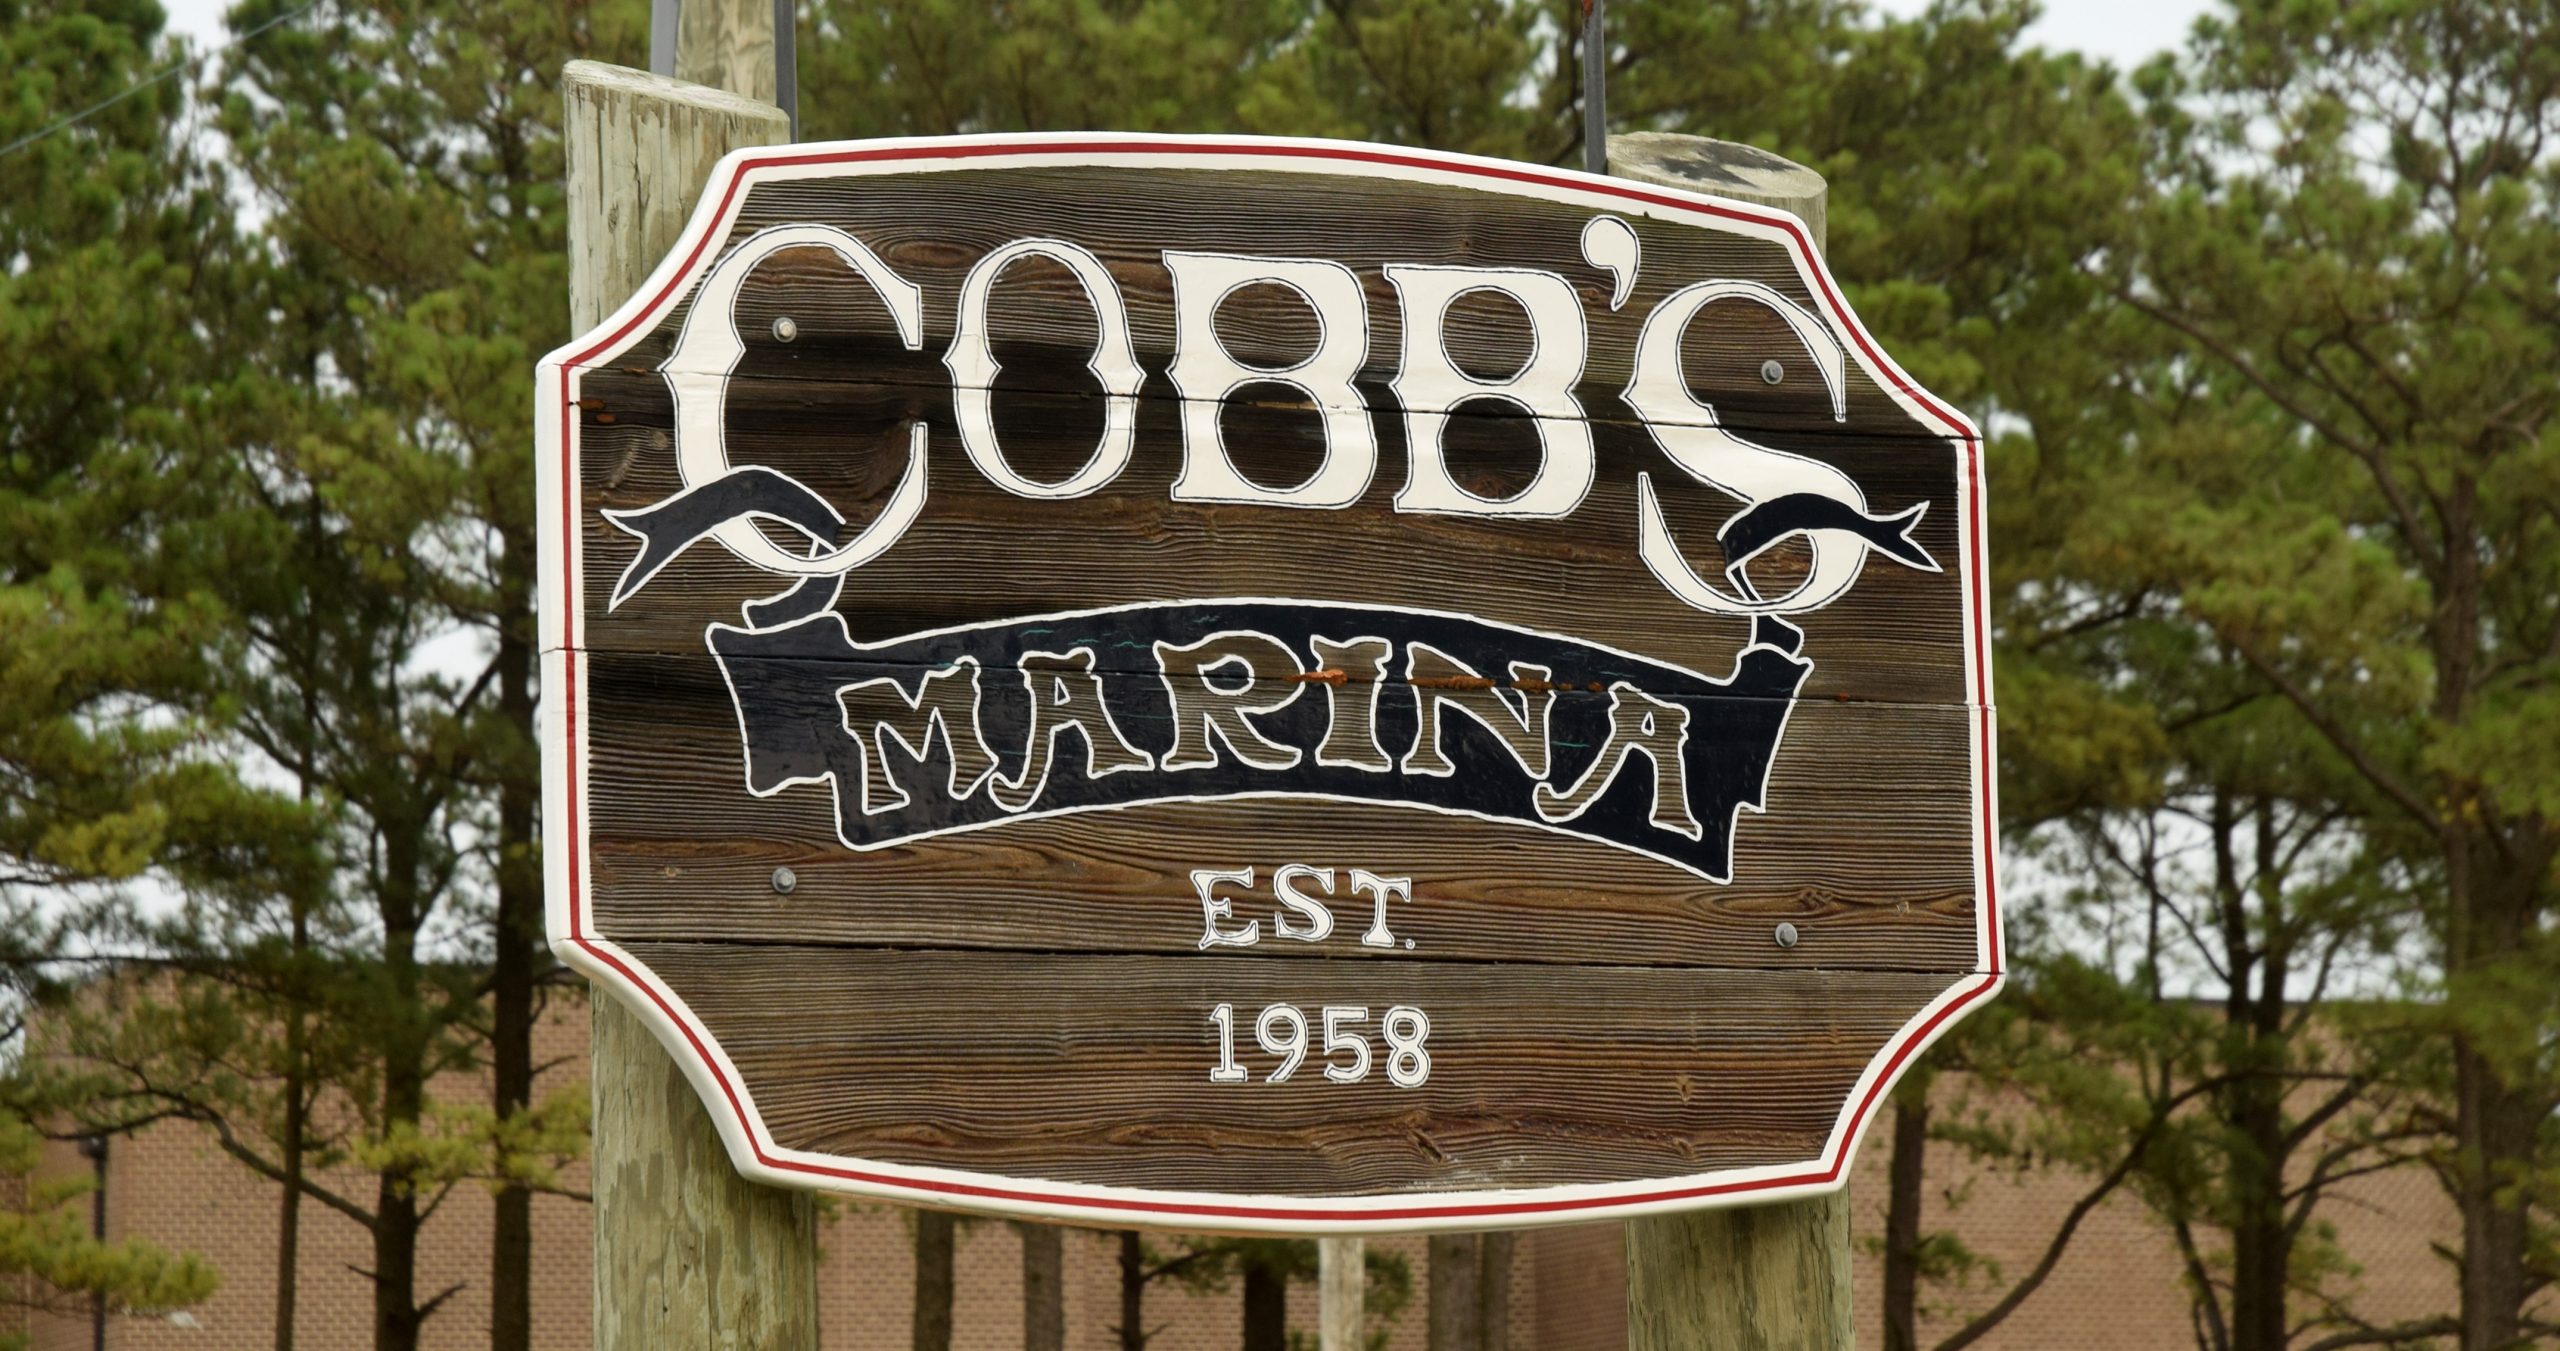 Cobb’s Marina